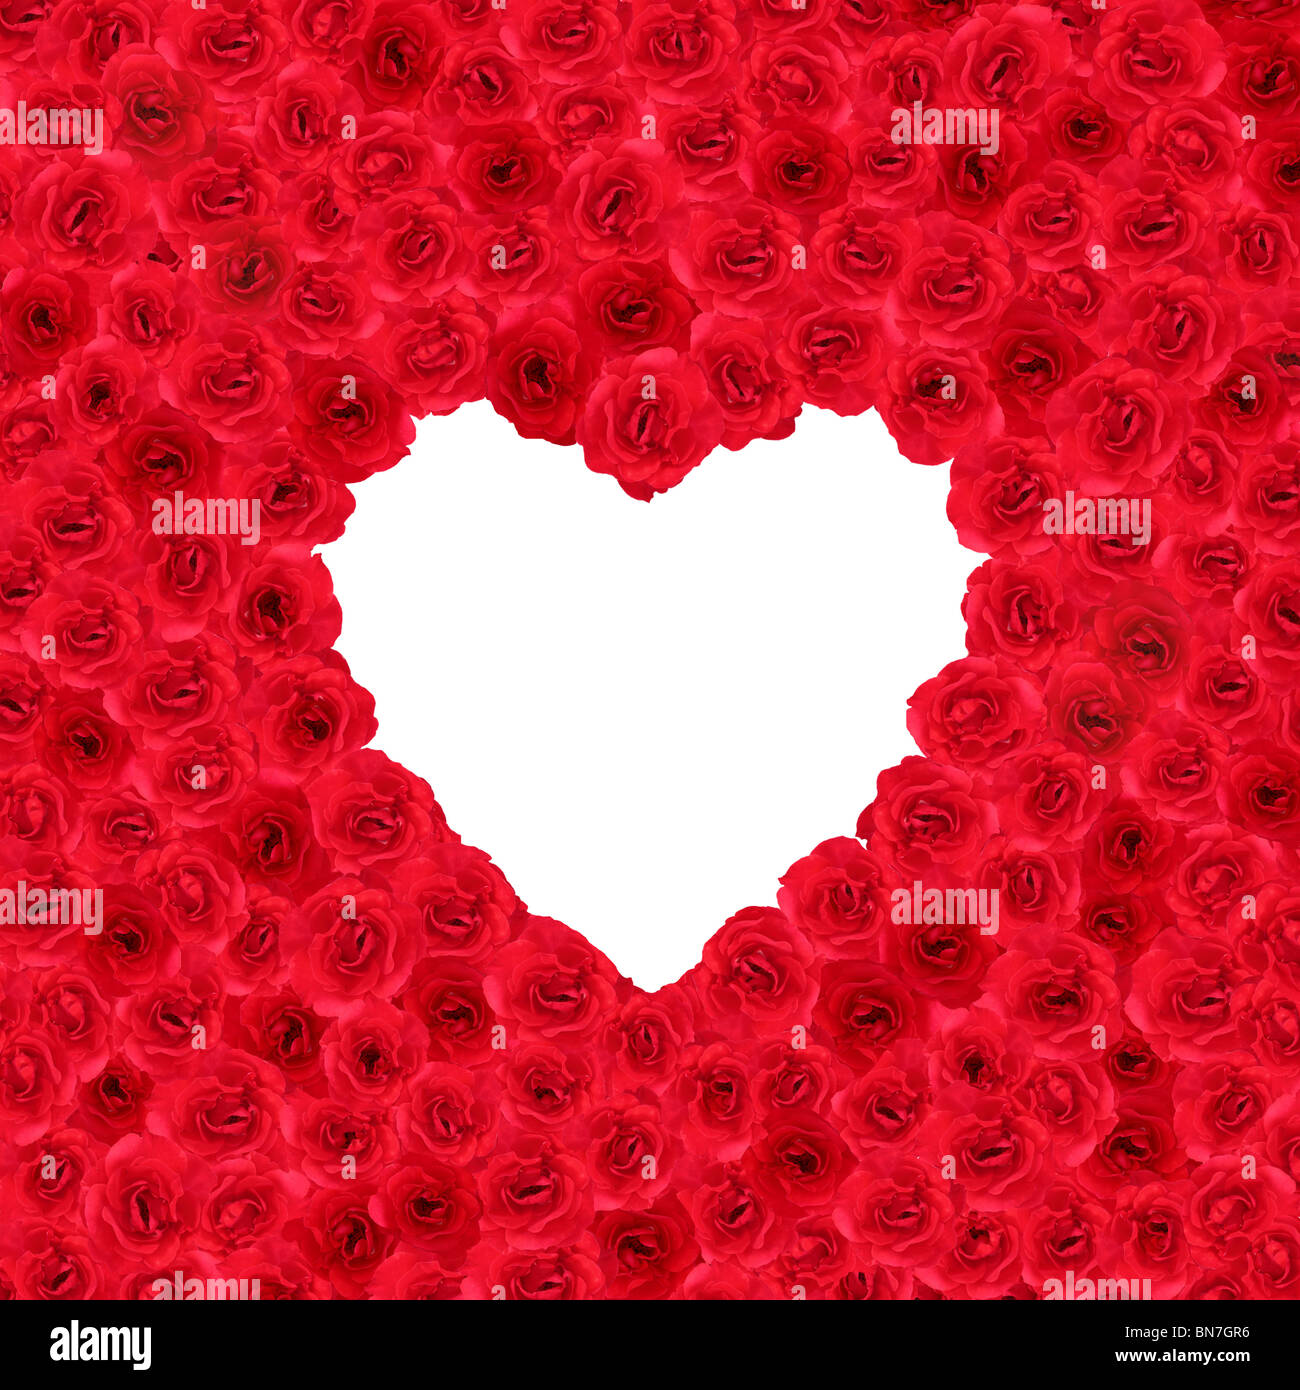 Molte rose rosse formando una forma di cuore in un formato quadrato Foto Stock